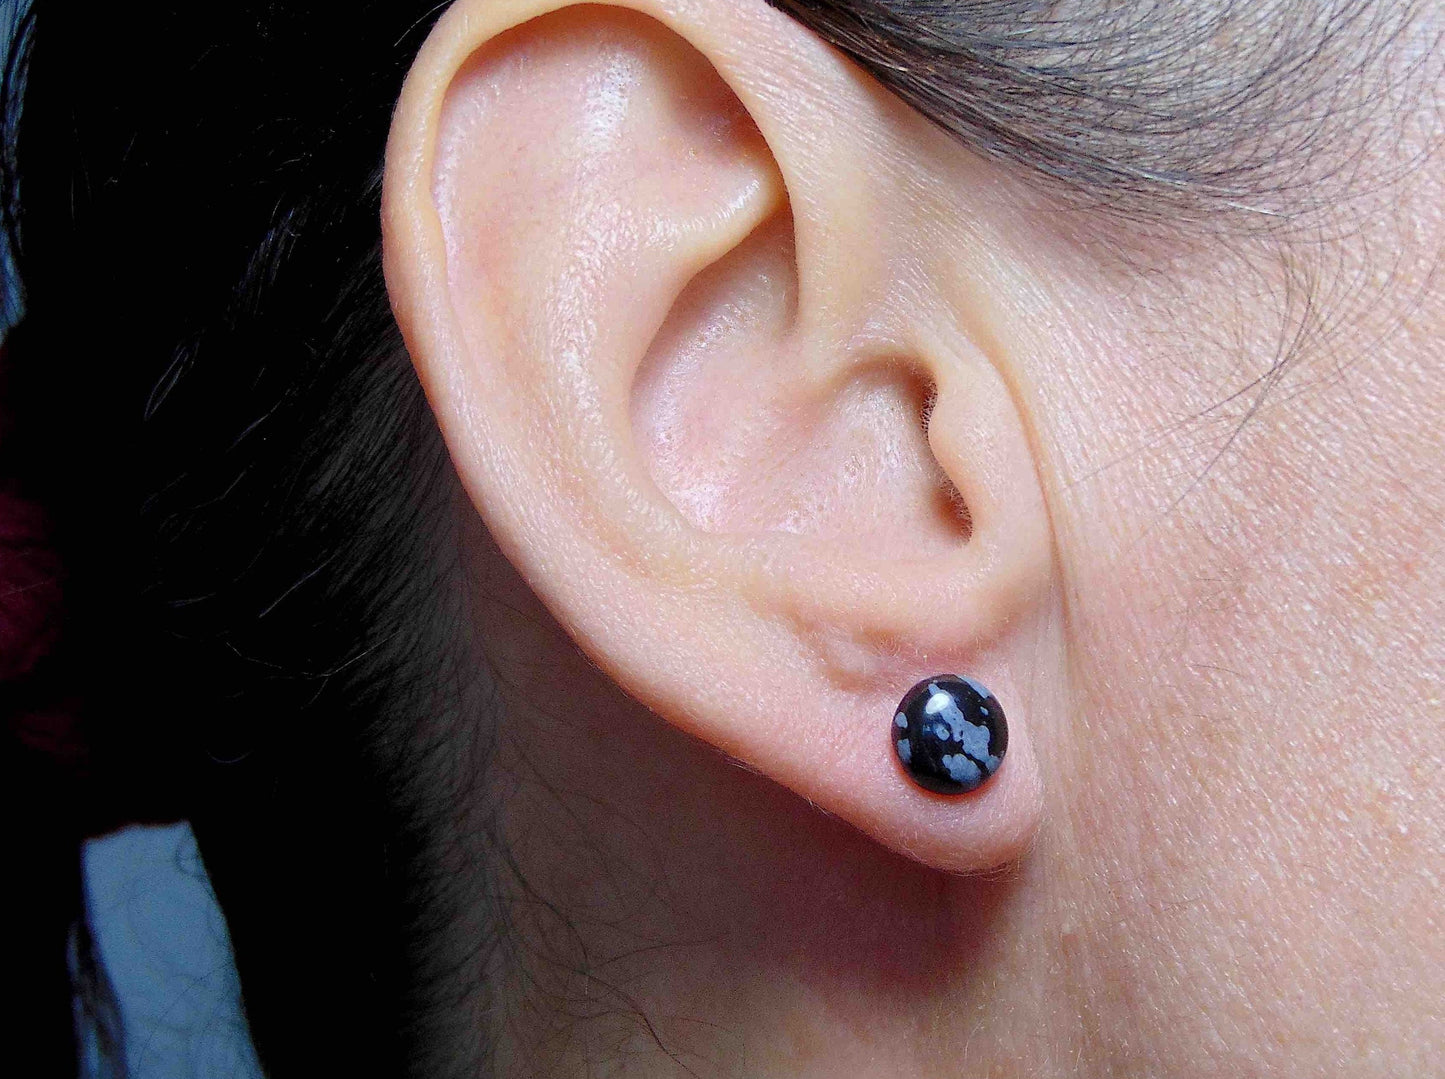 Puces d'oreilles 8mm cabochons ronds d'obsidienne neigeuse (marbrée noir et blanc), tiges acier inoxydable